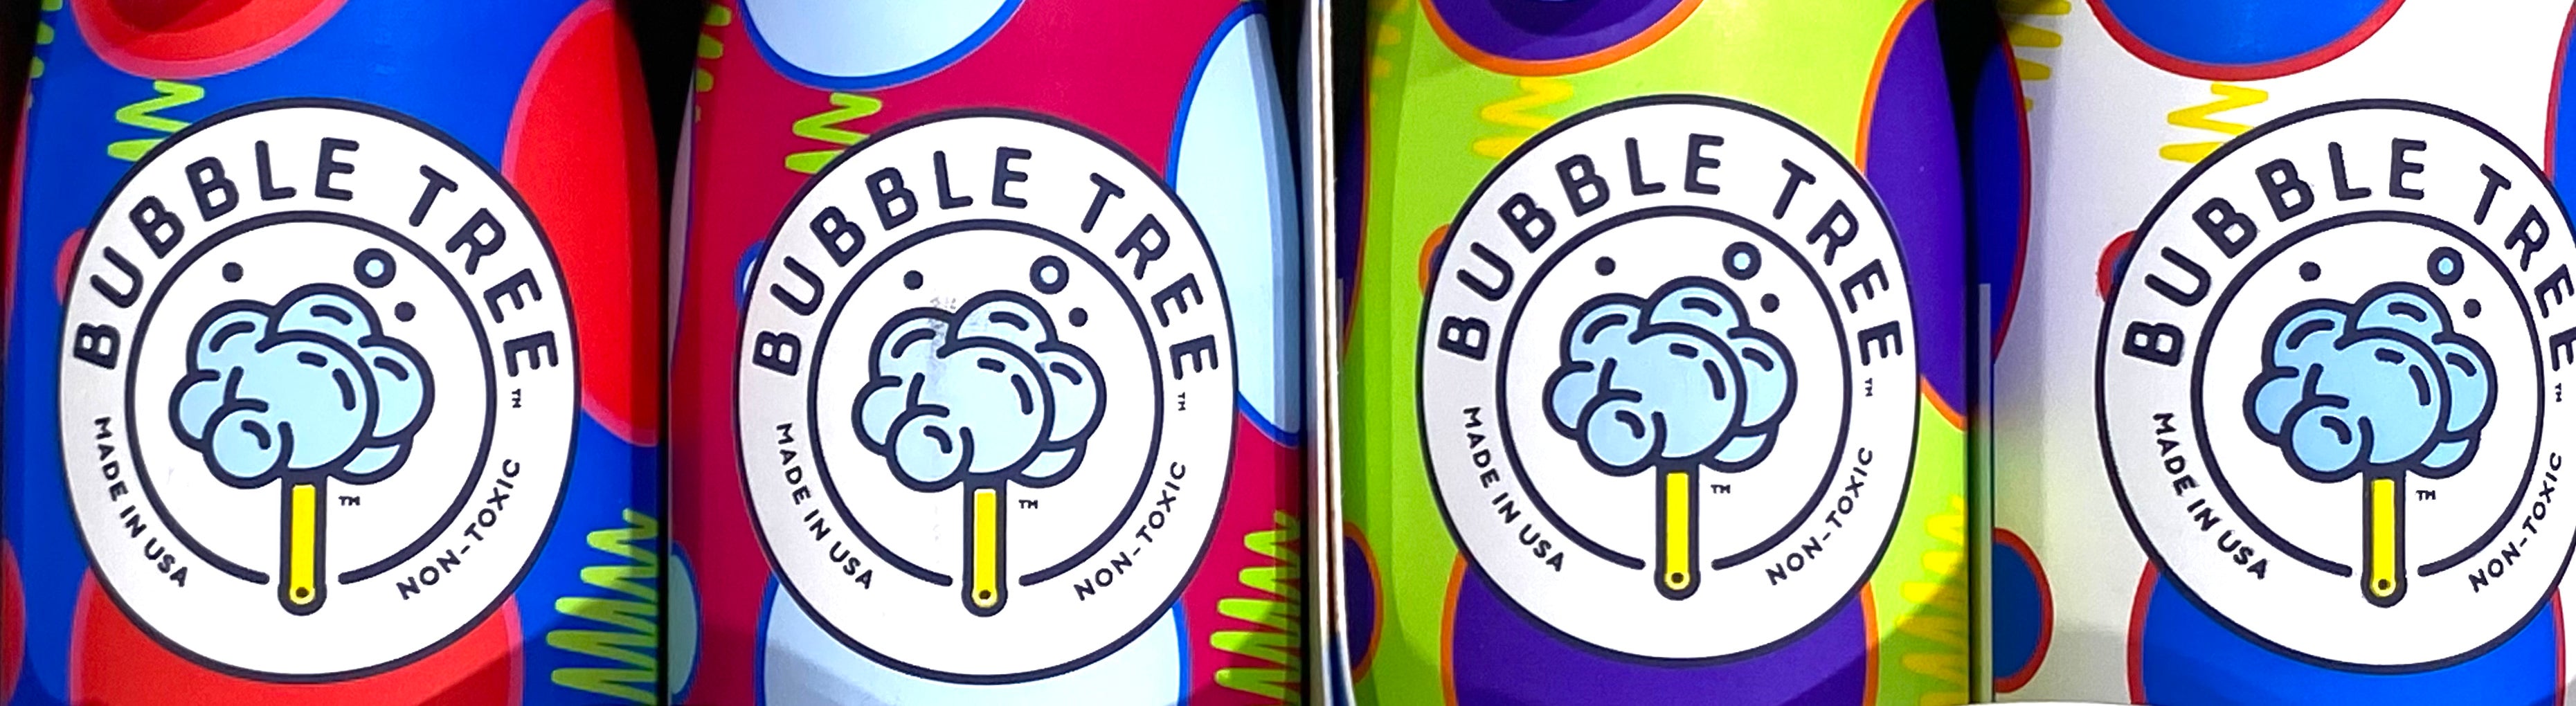 2 Aluminum Bottles & Wands - Bubble Tree Refillable Bubble System    